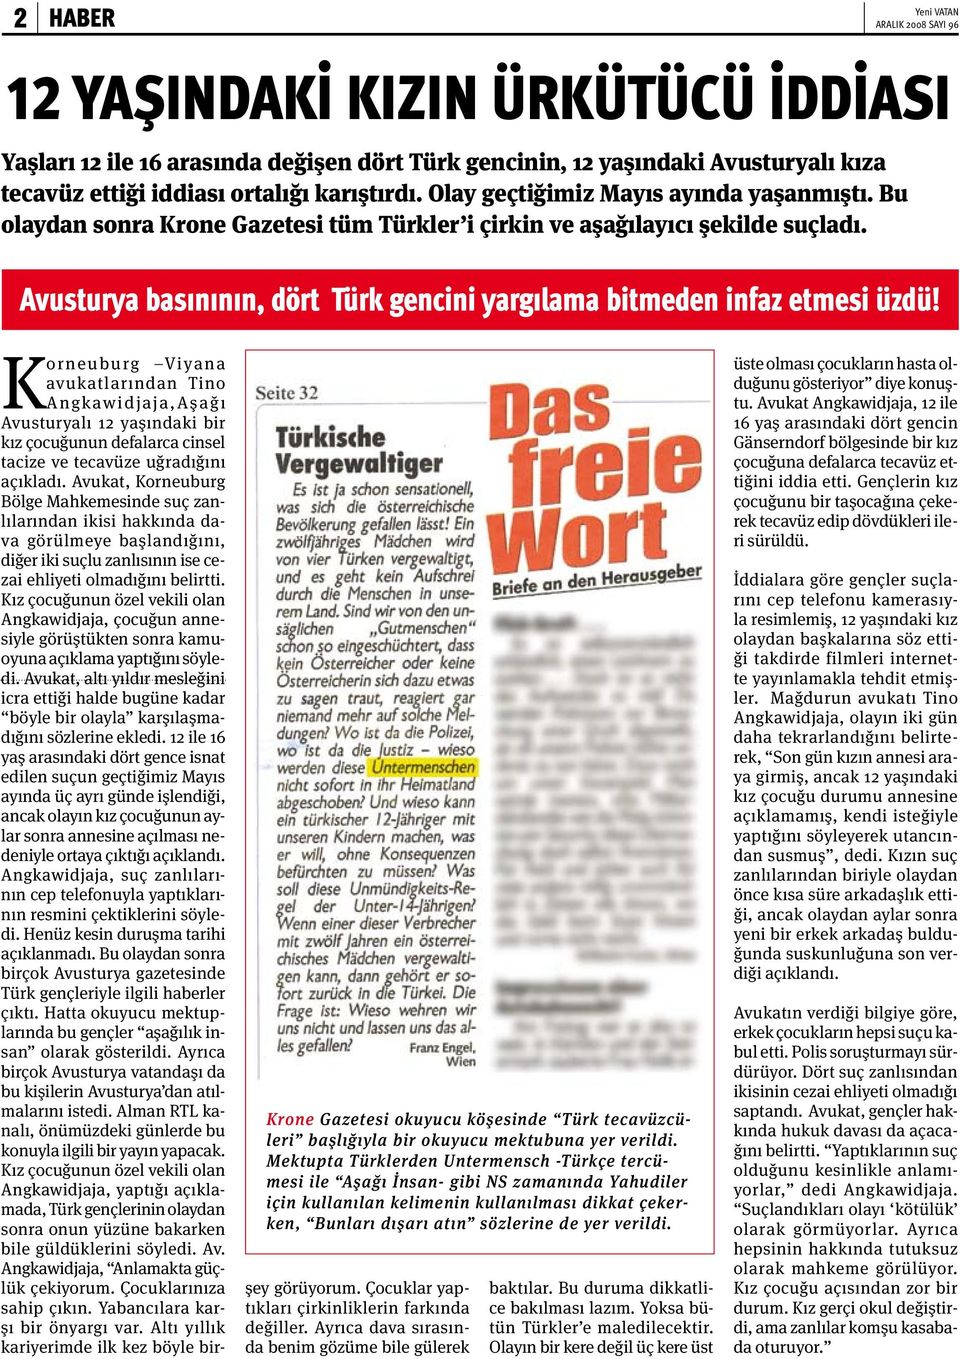 Avusturya basınının, dört Türk gencini yargılama bitmeden infaz etmesi üzdü! Krone Gazetesi okuyucu köşesinde Türk tecavüzcüleri başlığıyla bir okuyucu mektubuna yer verildi.